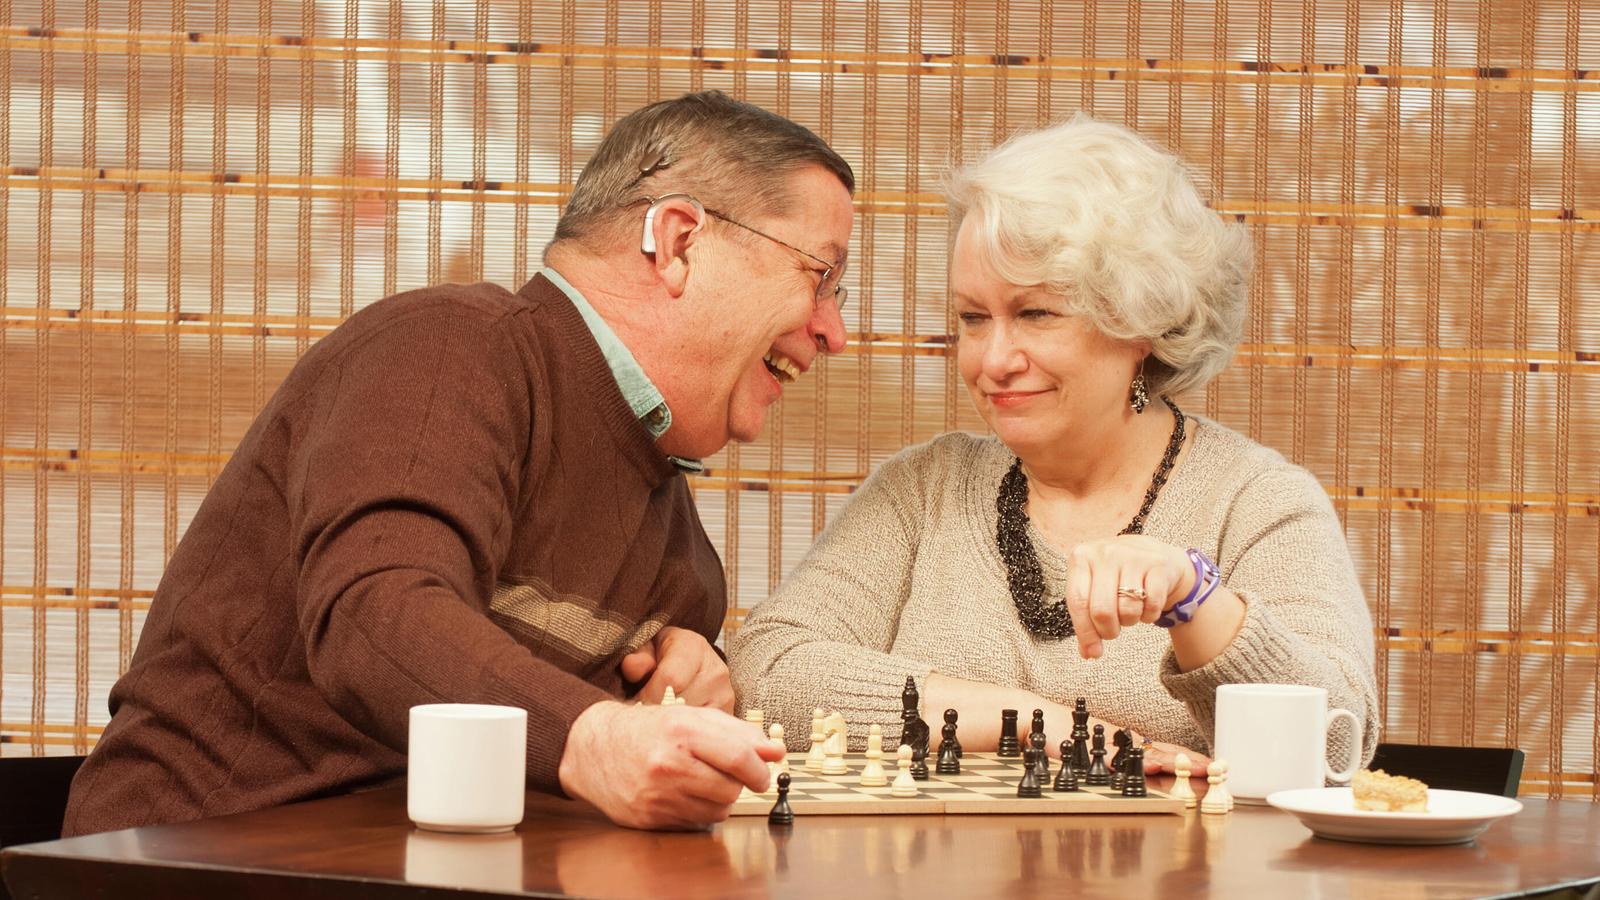 Bill, porteur d’implant, et sa femme Pam se détentent en jouant aux échecs